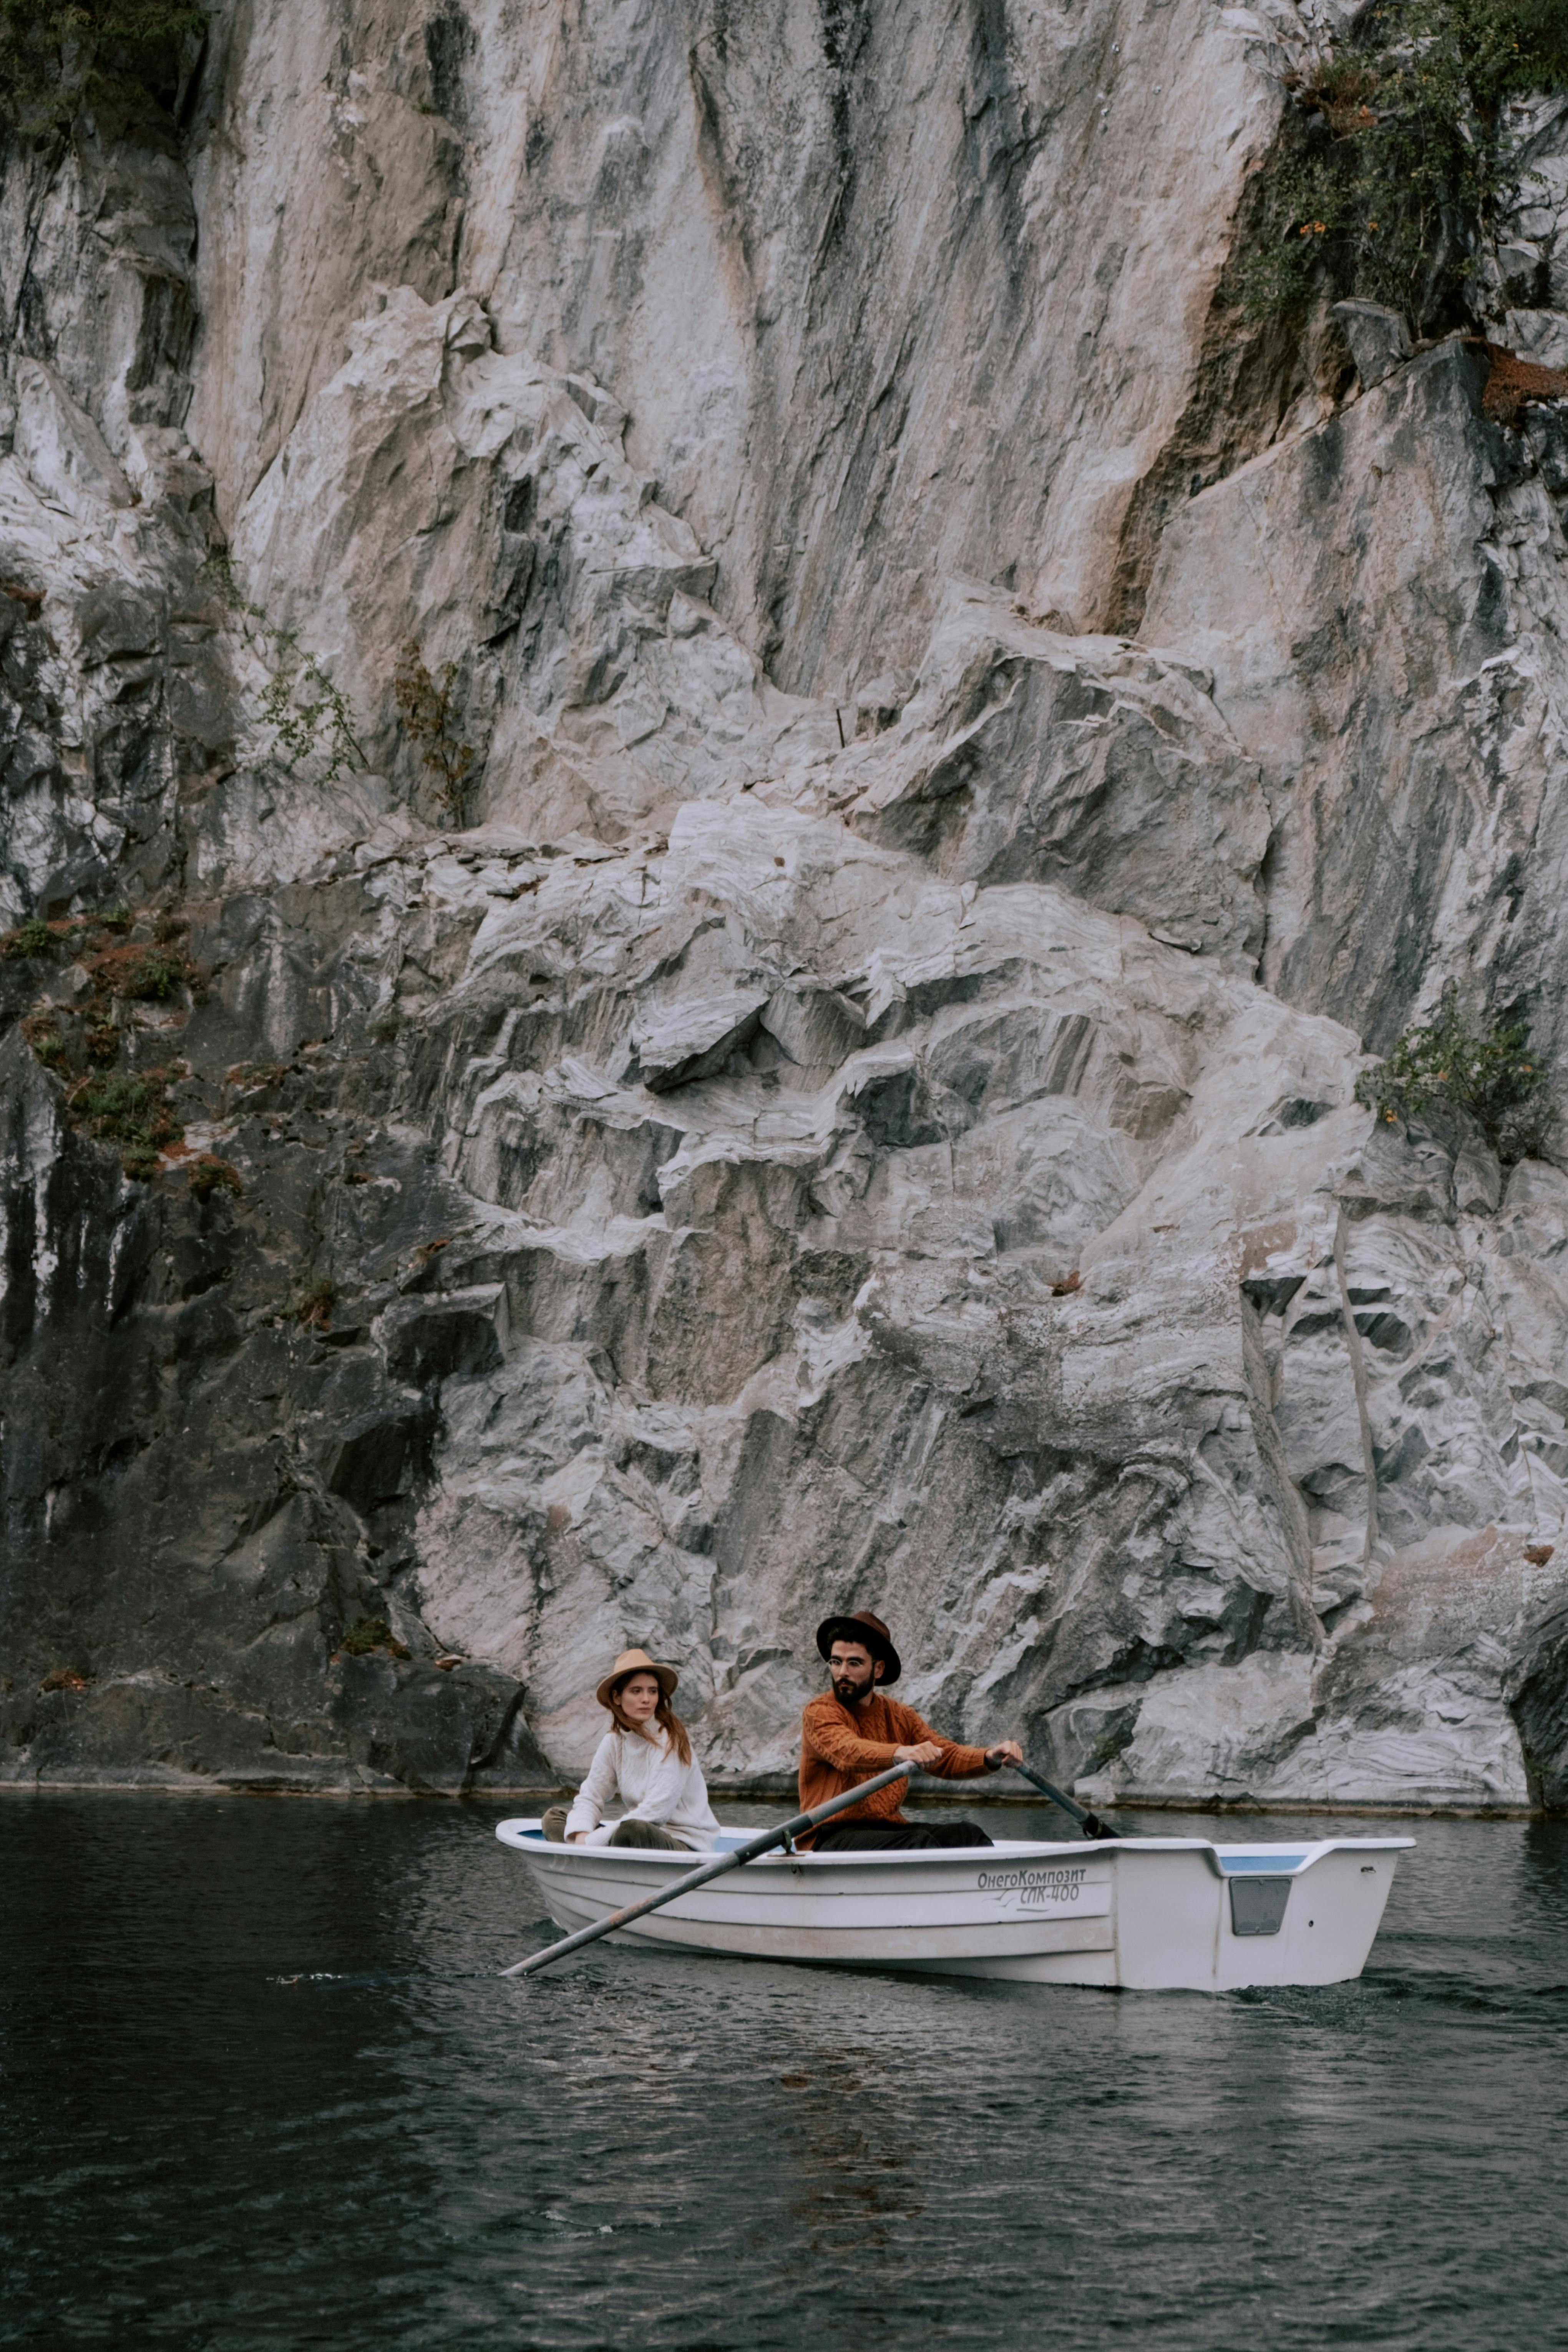 Ein unglückliches Paar auf einem Boot | Quelle: Pexels